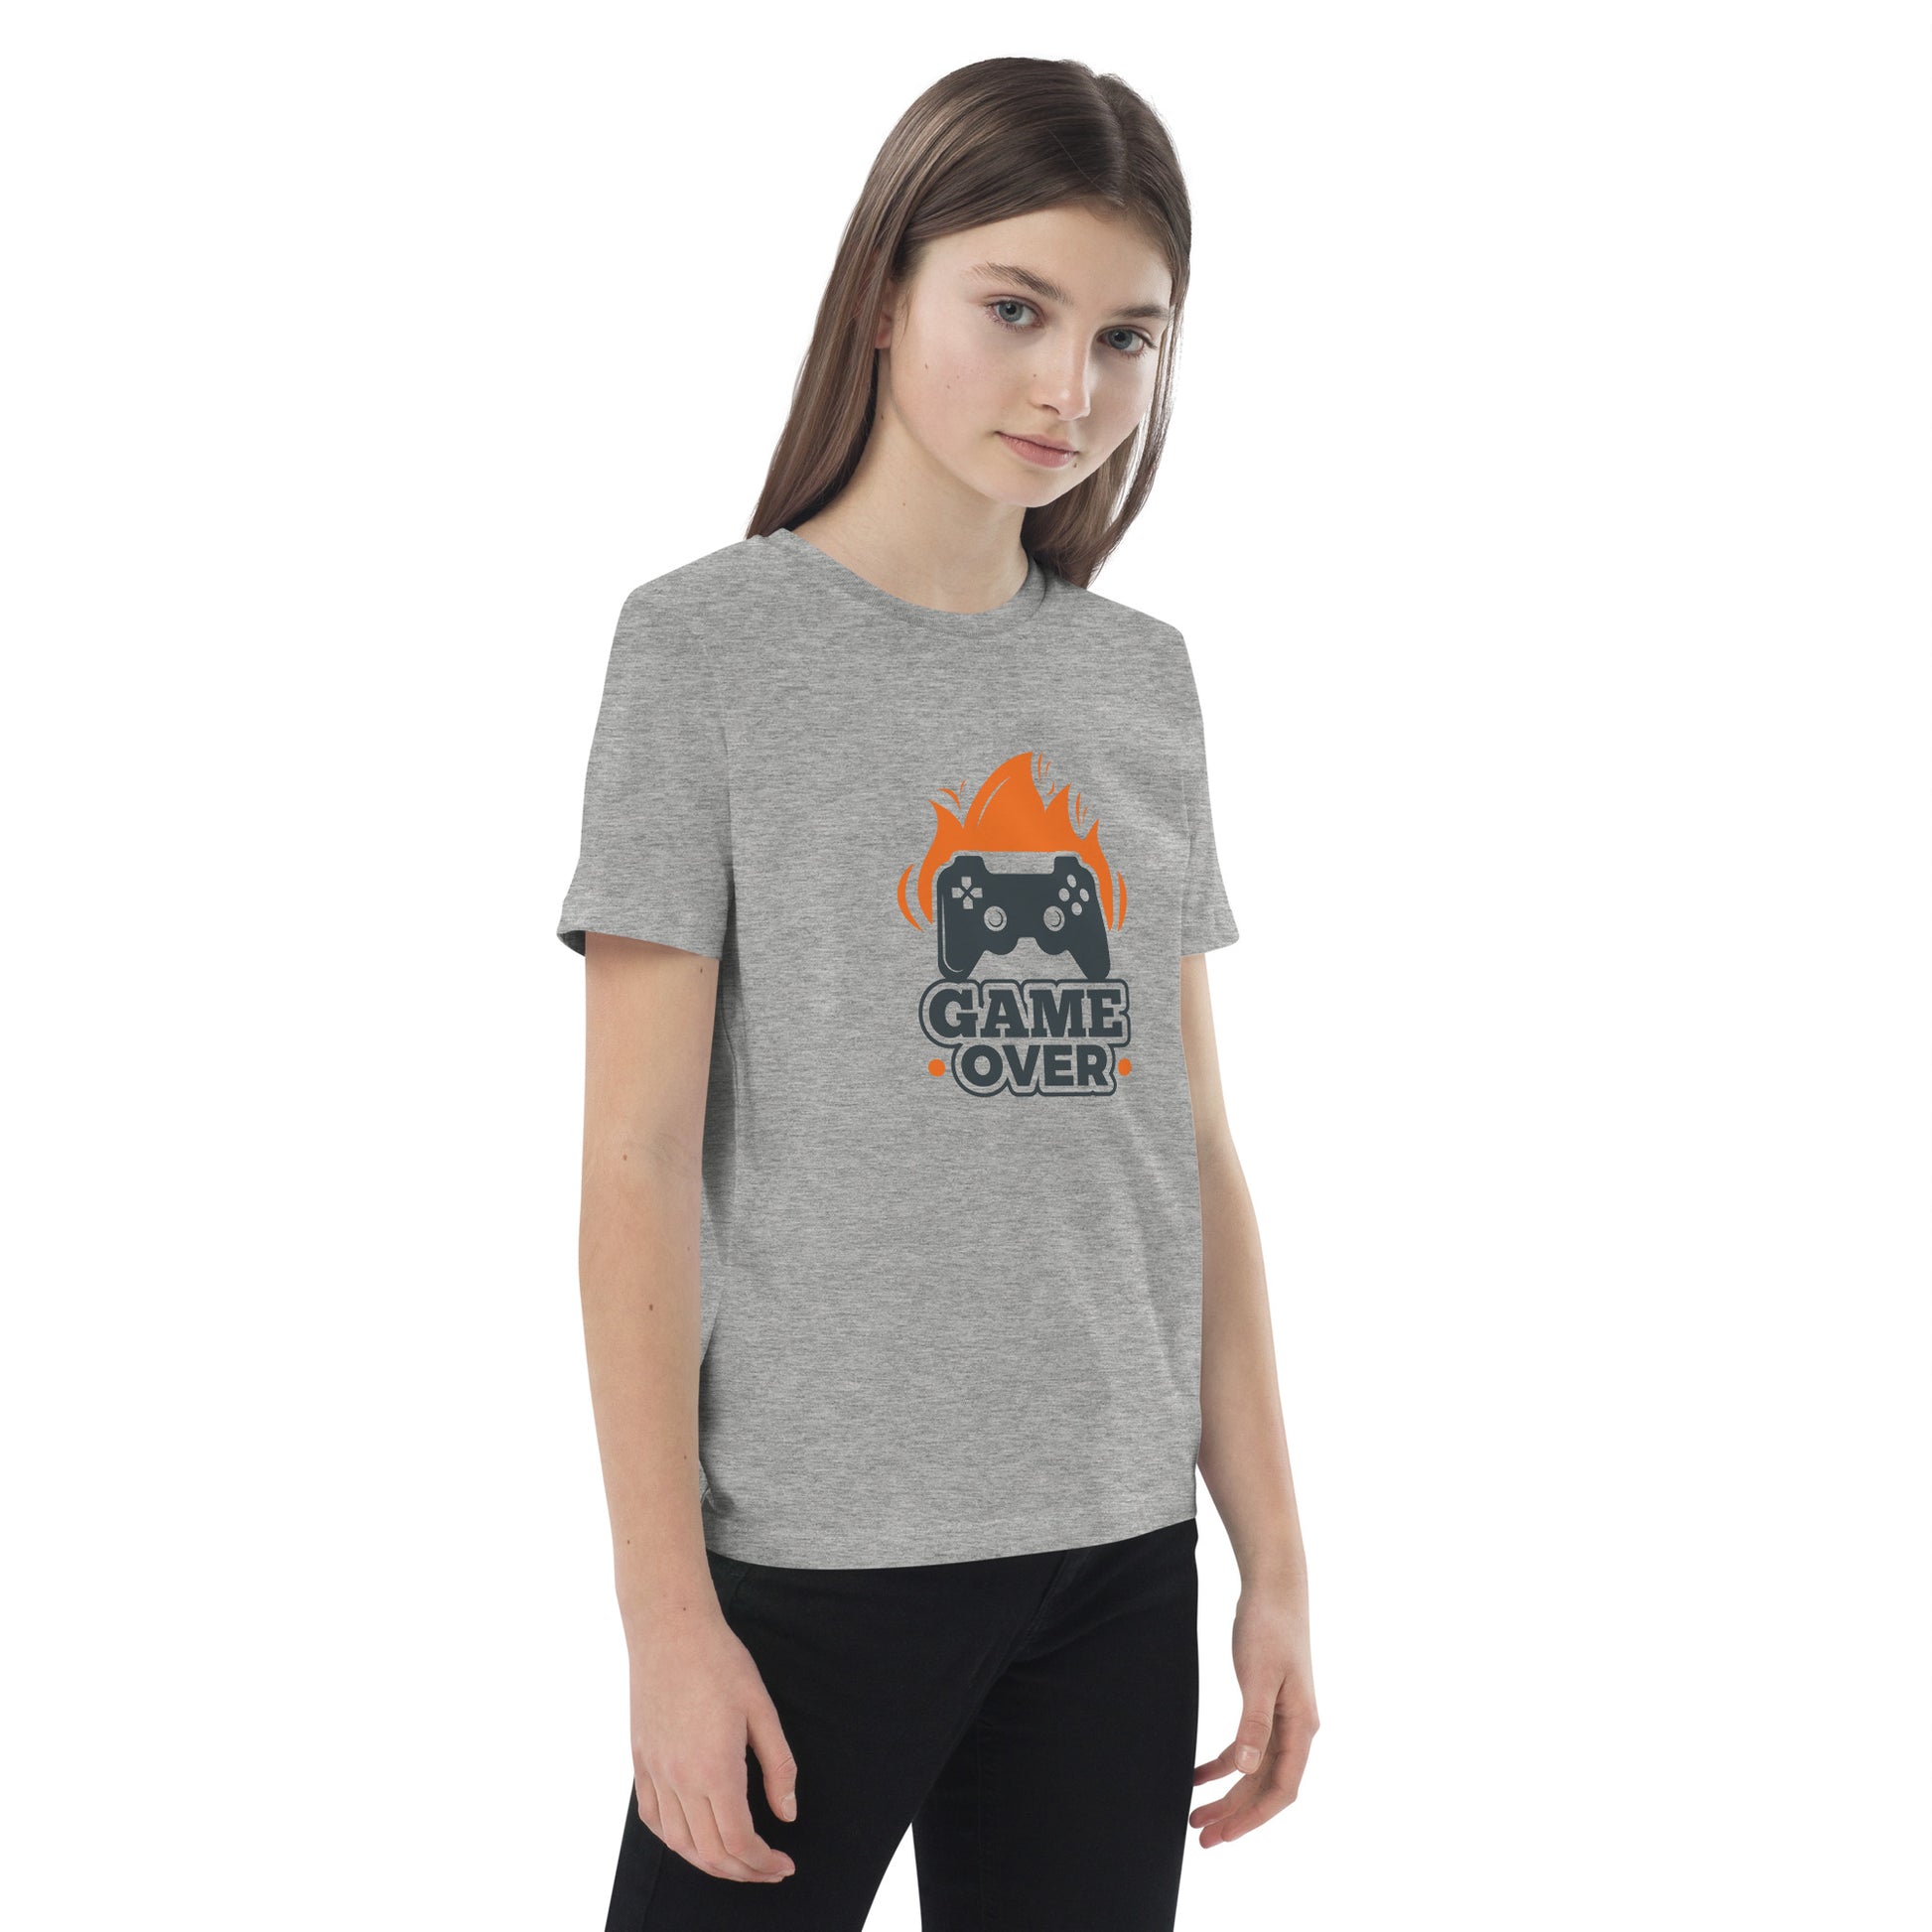 Game Over - Organic cotton kids t-shirt - HobbyMeFree